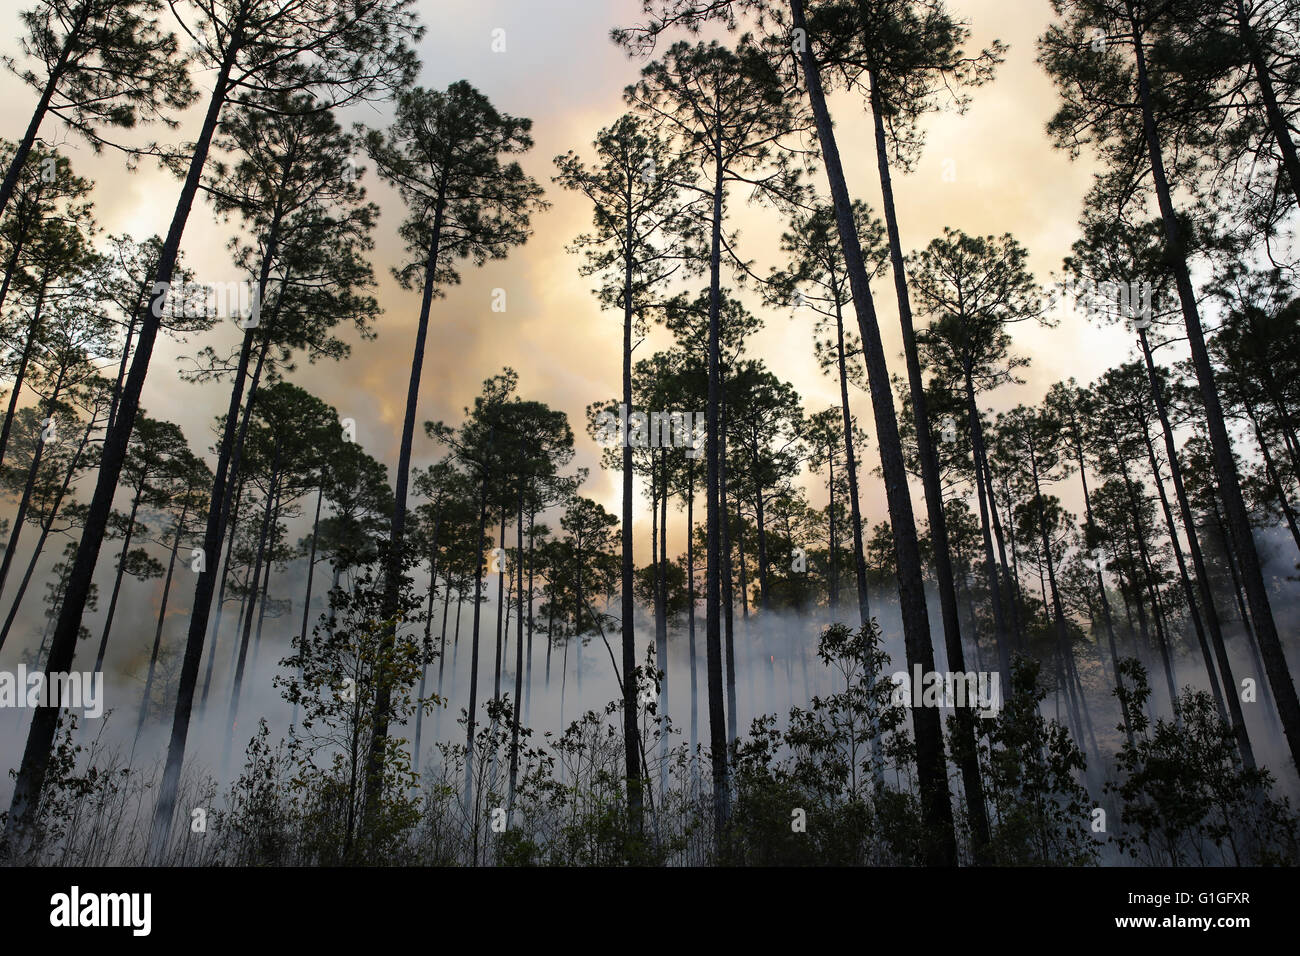 Brûlage dirigé, forêt Longleaf pine (Pinus palustris) sud-est des États-Unis d'Amérique Banque D'Images